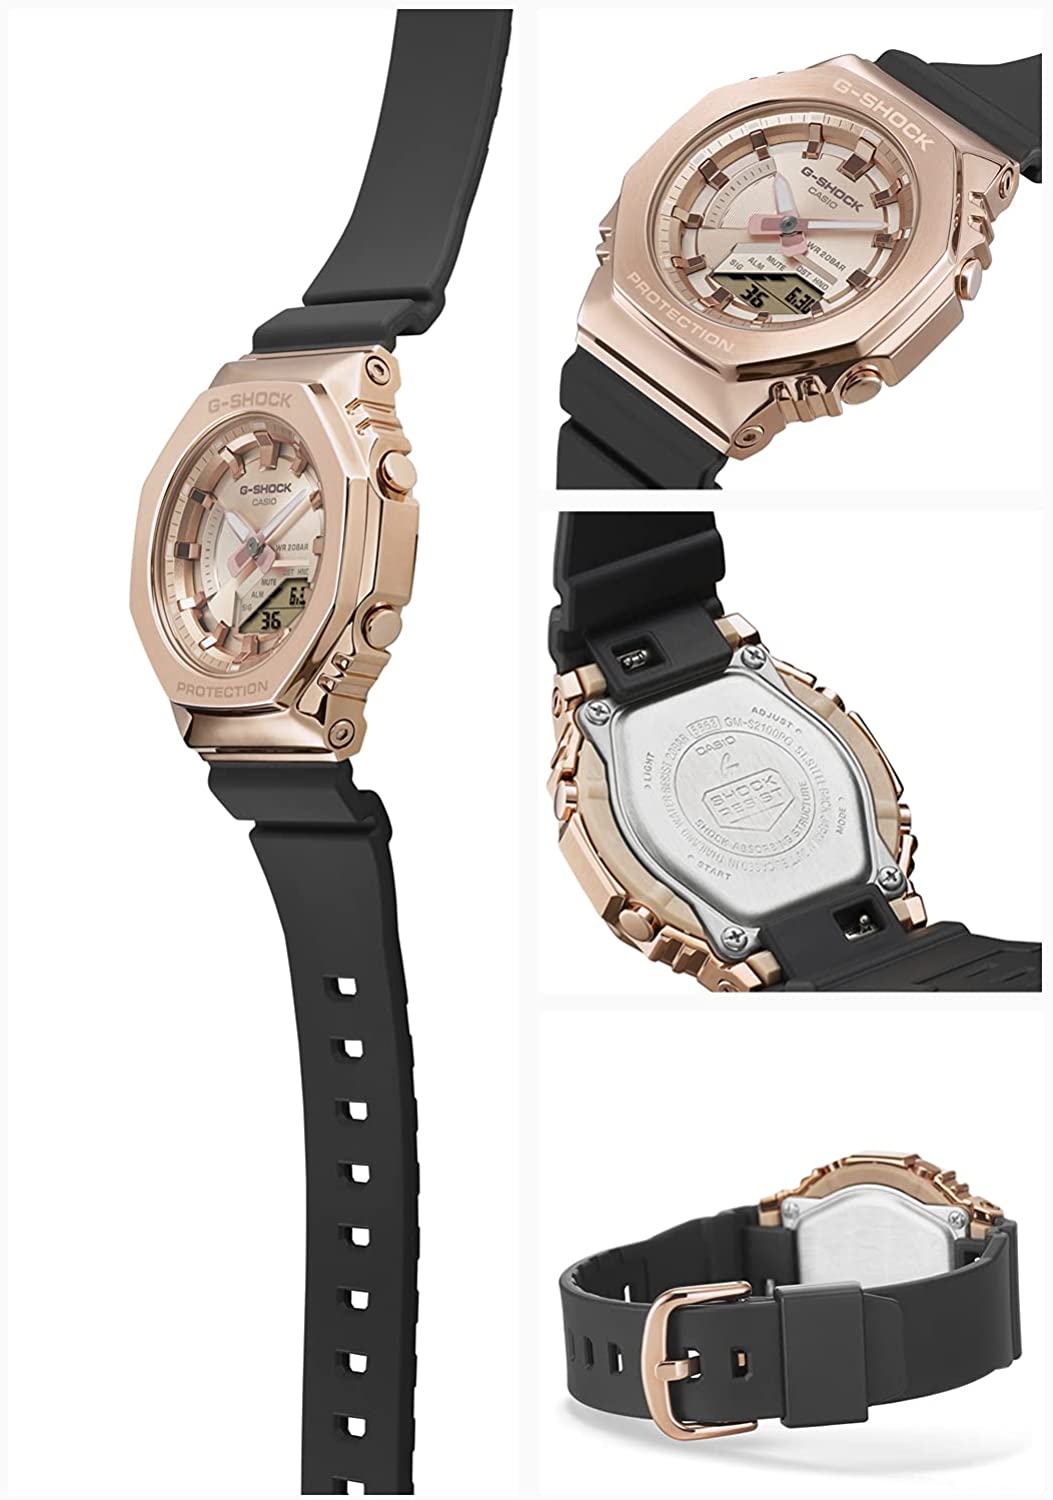 Casio G-Shock Carbon Core Guard Rose Gold AP CasiOak Ladies' Metal Case Watch GMS2100PG-1A4DR - Prestige